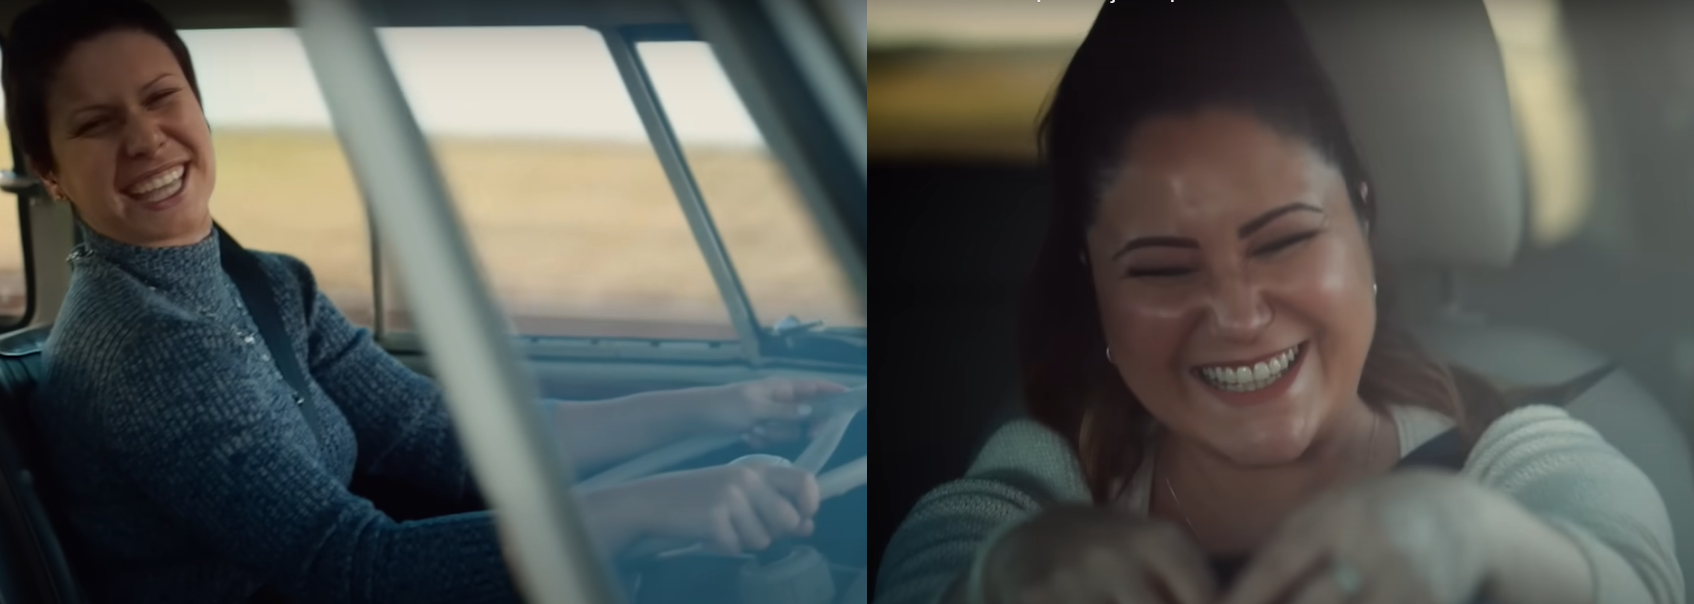 Elis Regina e Maria Rita dirigem Kombi em video da Volkswagen feito com inteligência artificial